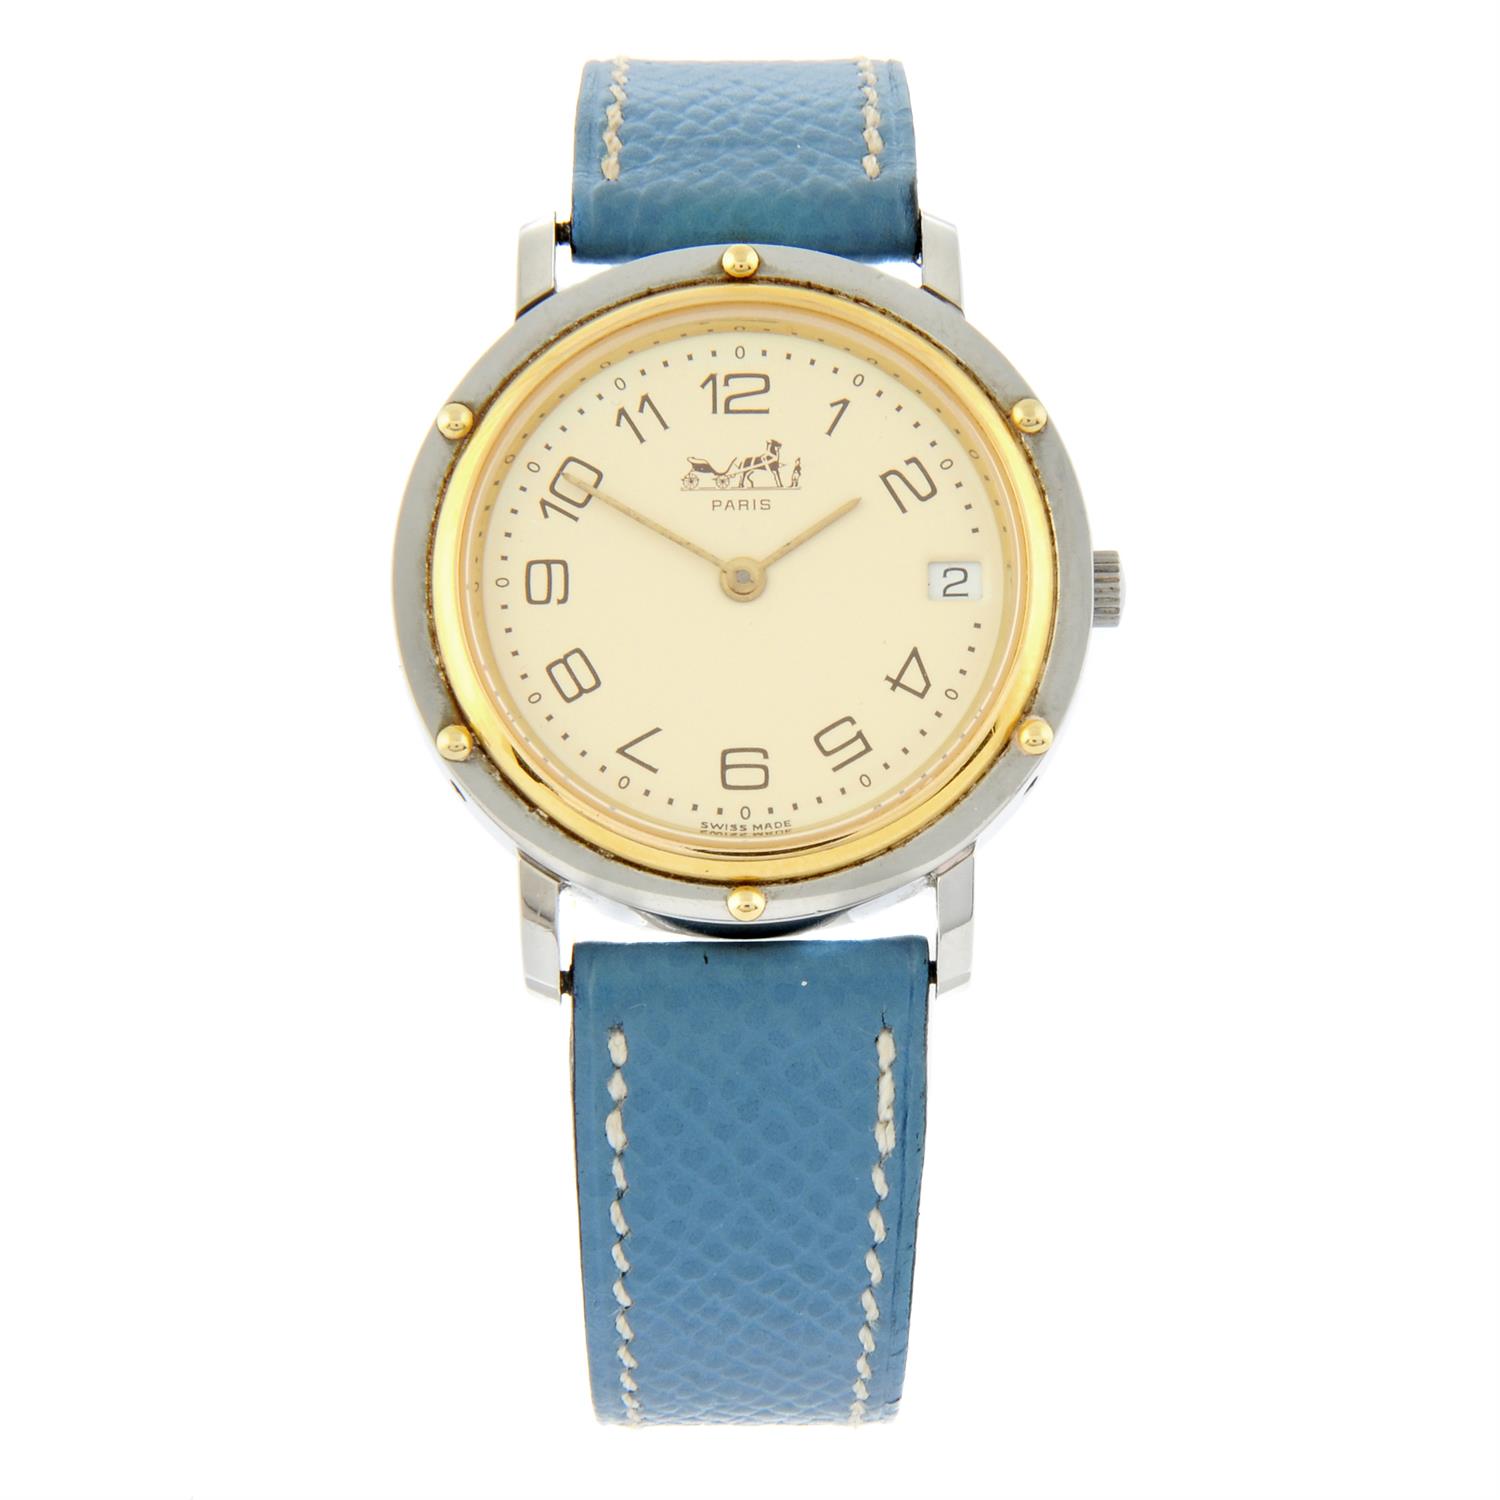 Hermes - a Clipper watch, 33.5mm.